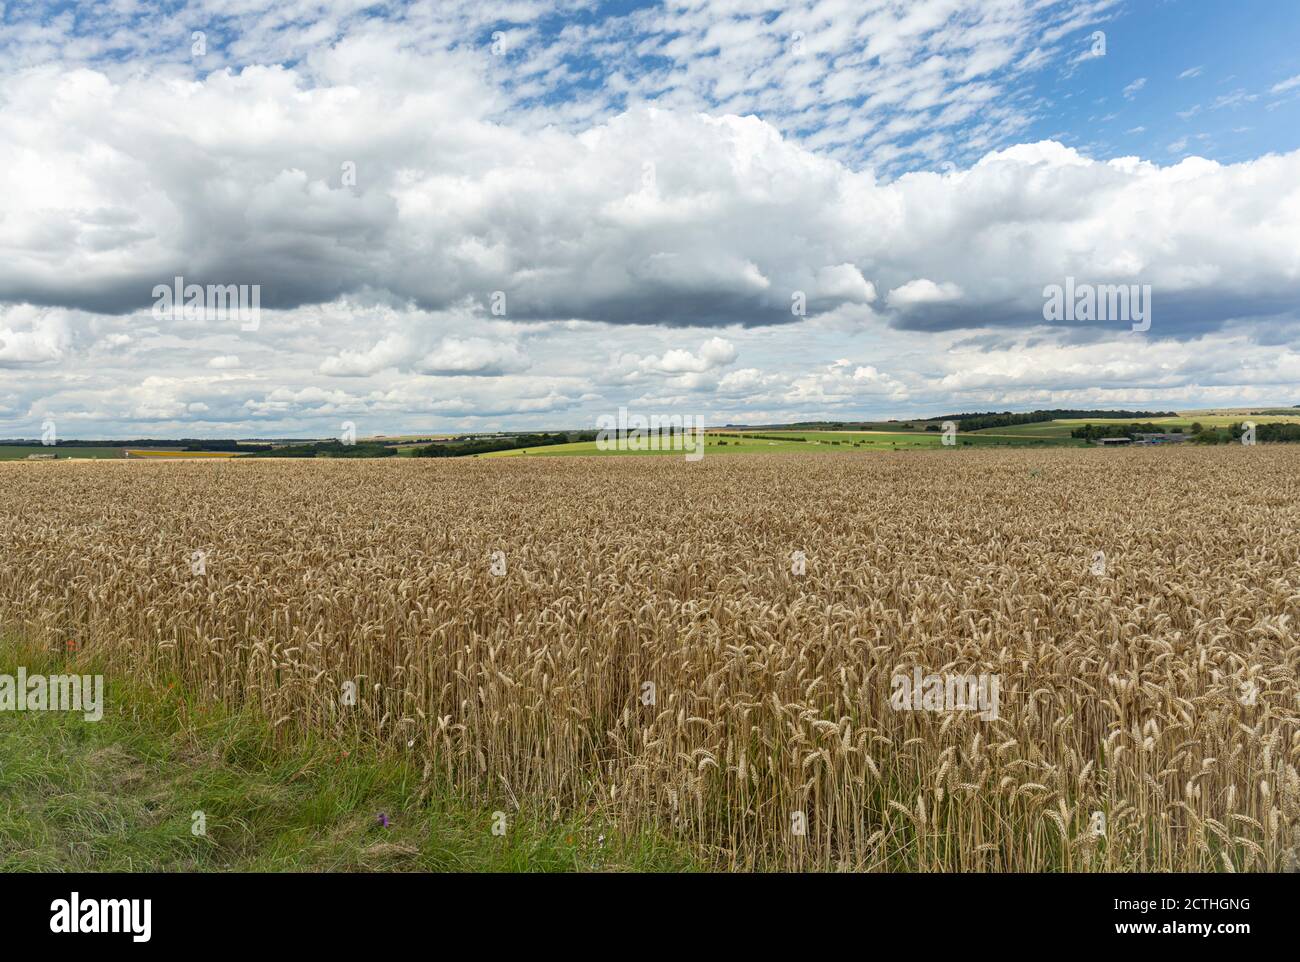 Ein Ackerfeld, das Getreidepflanzen auf der Salisbury Plain im Sommer, Wiltshire, England, Großbritannien, anbauen kann Stockfoto